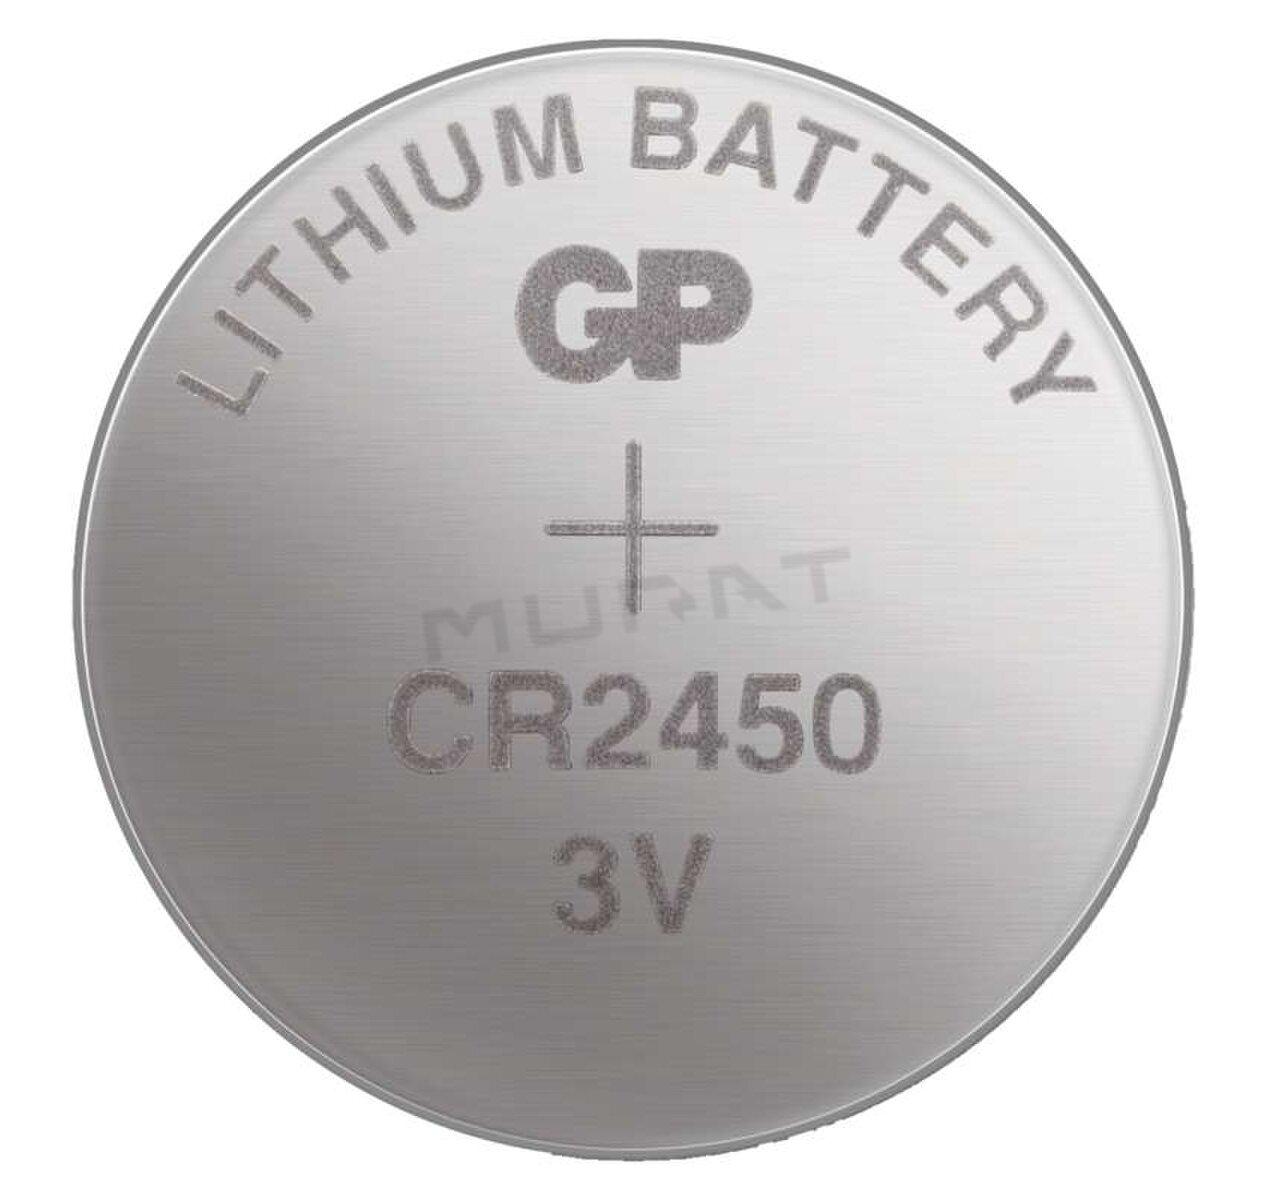 Batéria CR 2450 3V/600mAh GP obj.č. B1585